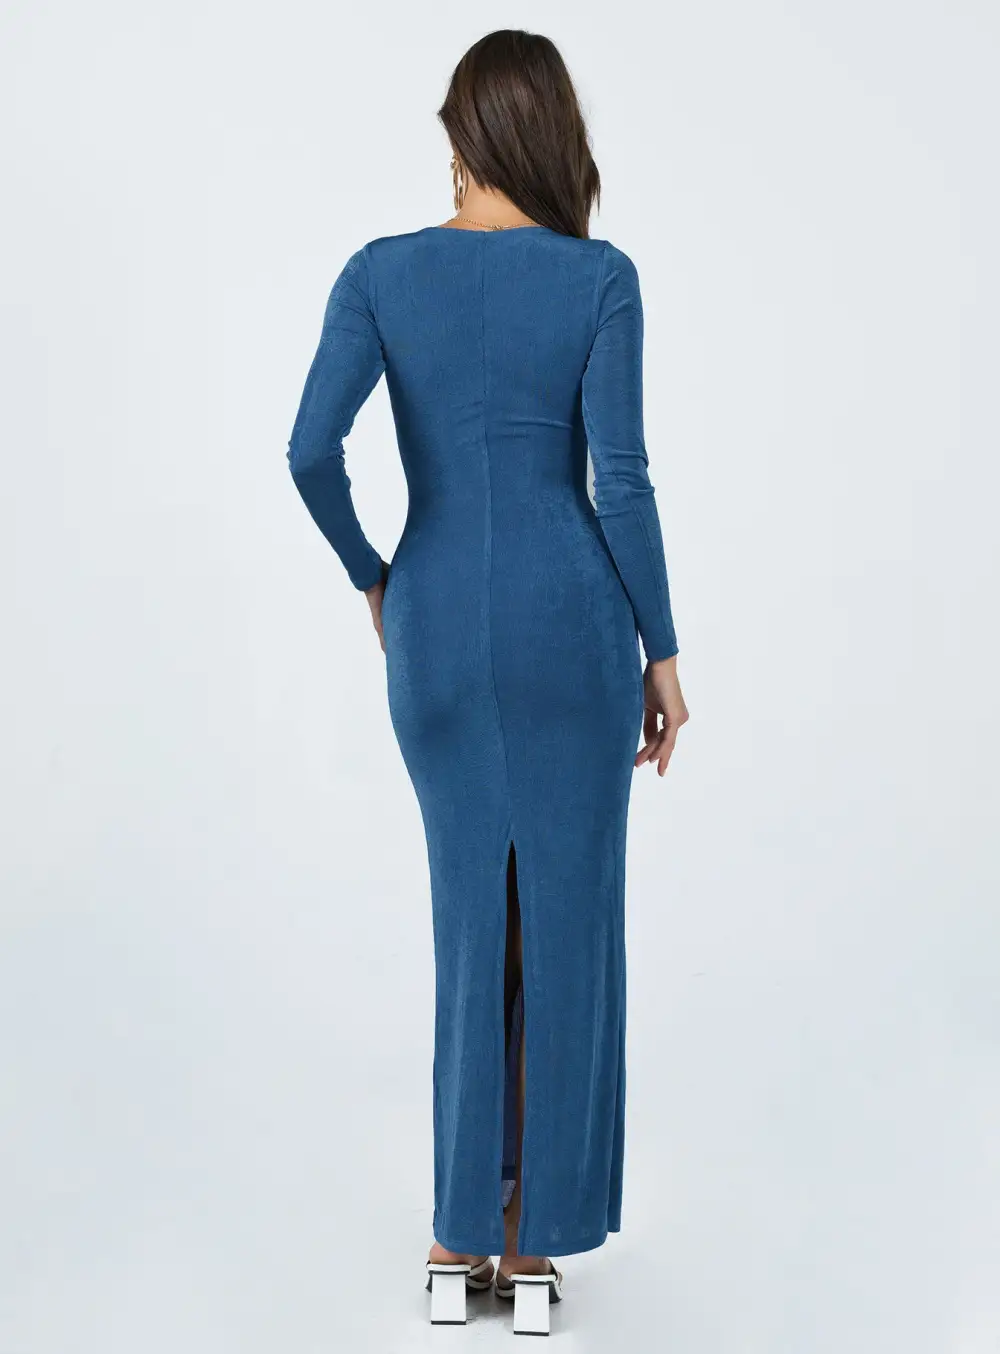 Zelie Maxi Dress Blue